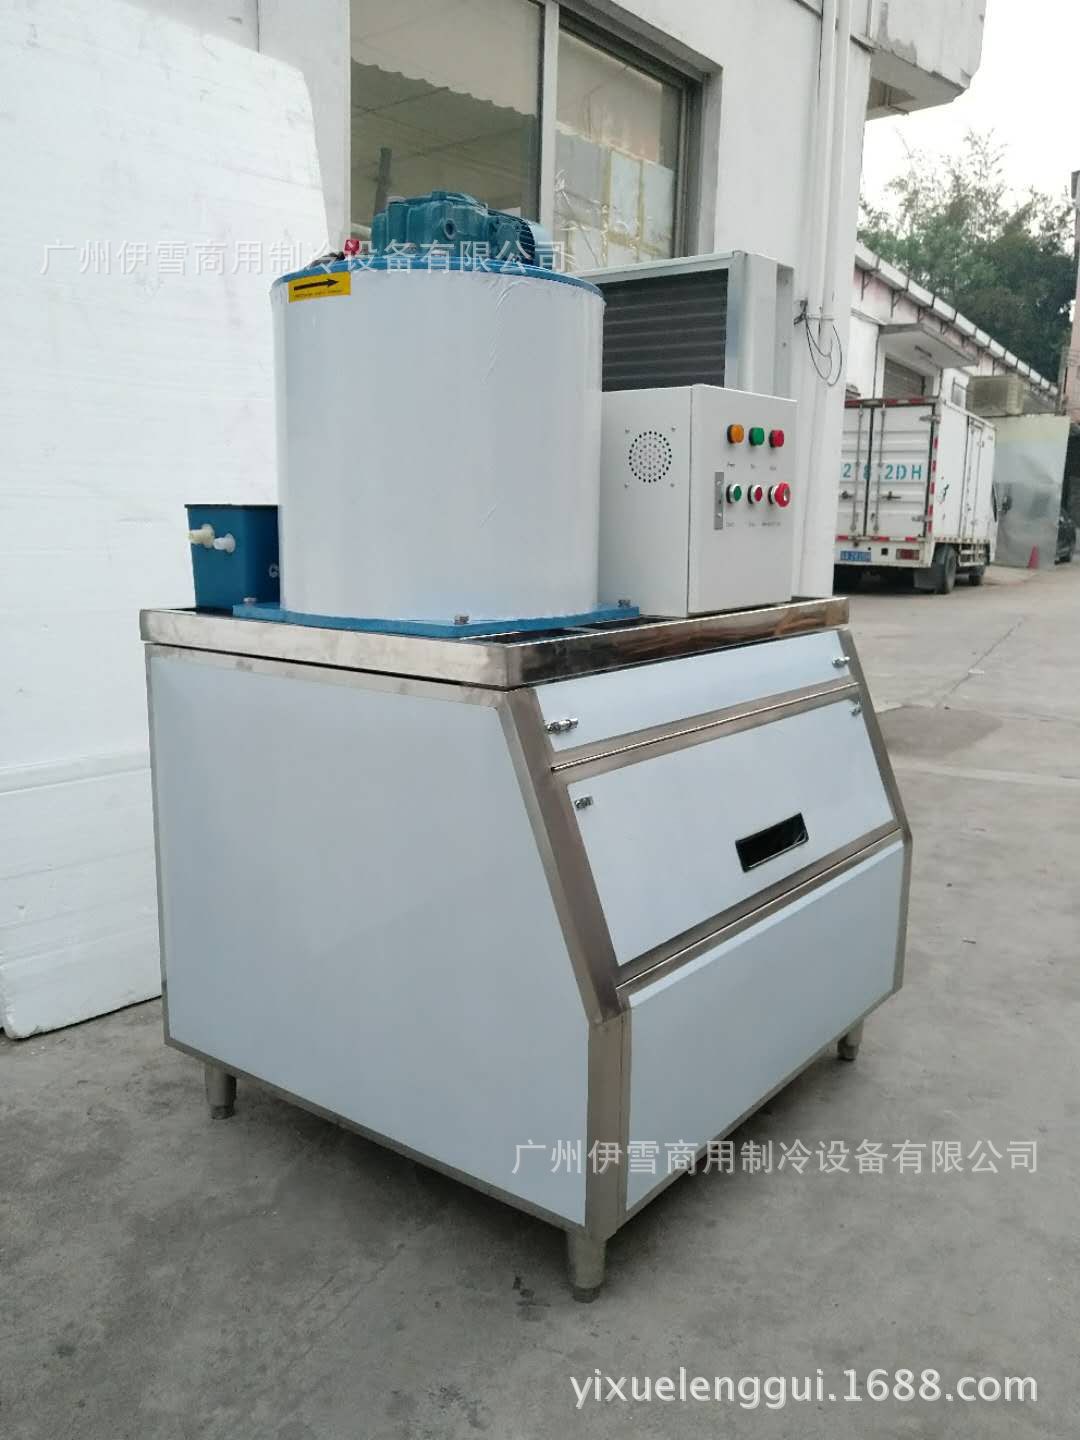 伊蝶300公斤片冰机商用超市水产海鲜市场片冰制冰机 鳞片机示例图10